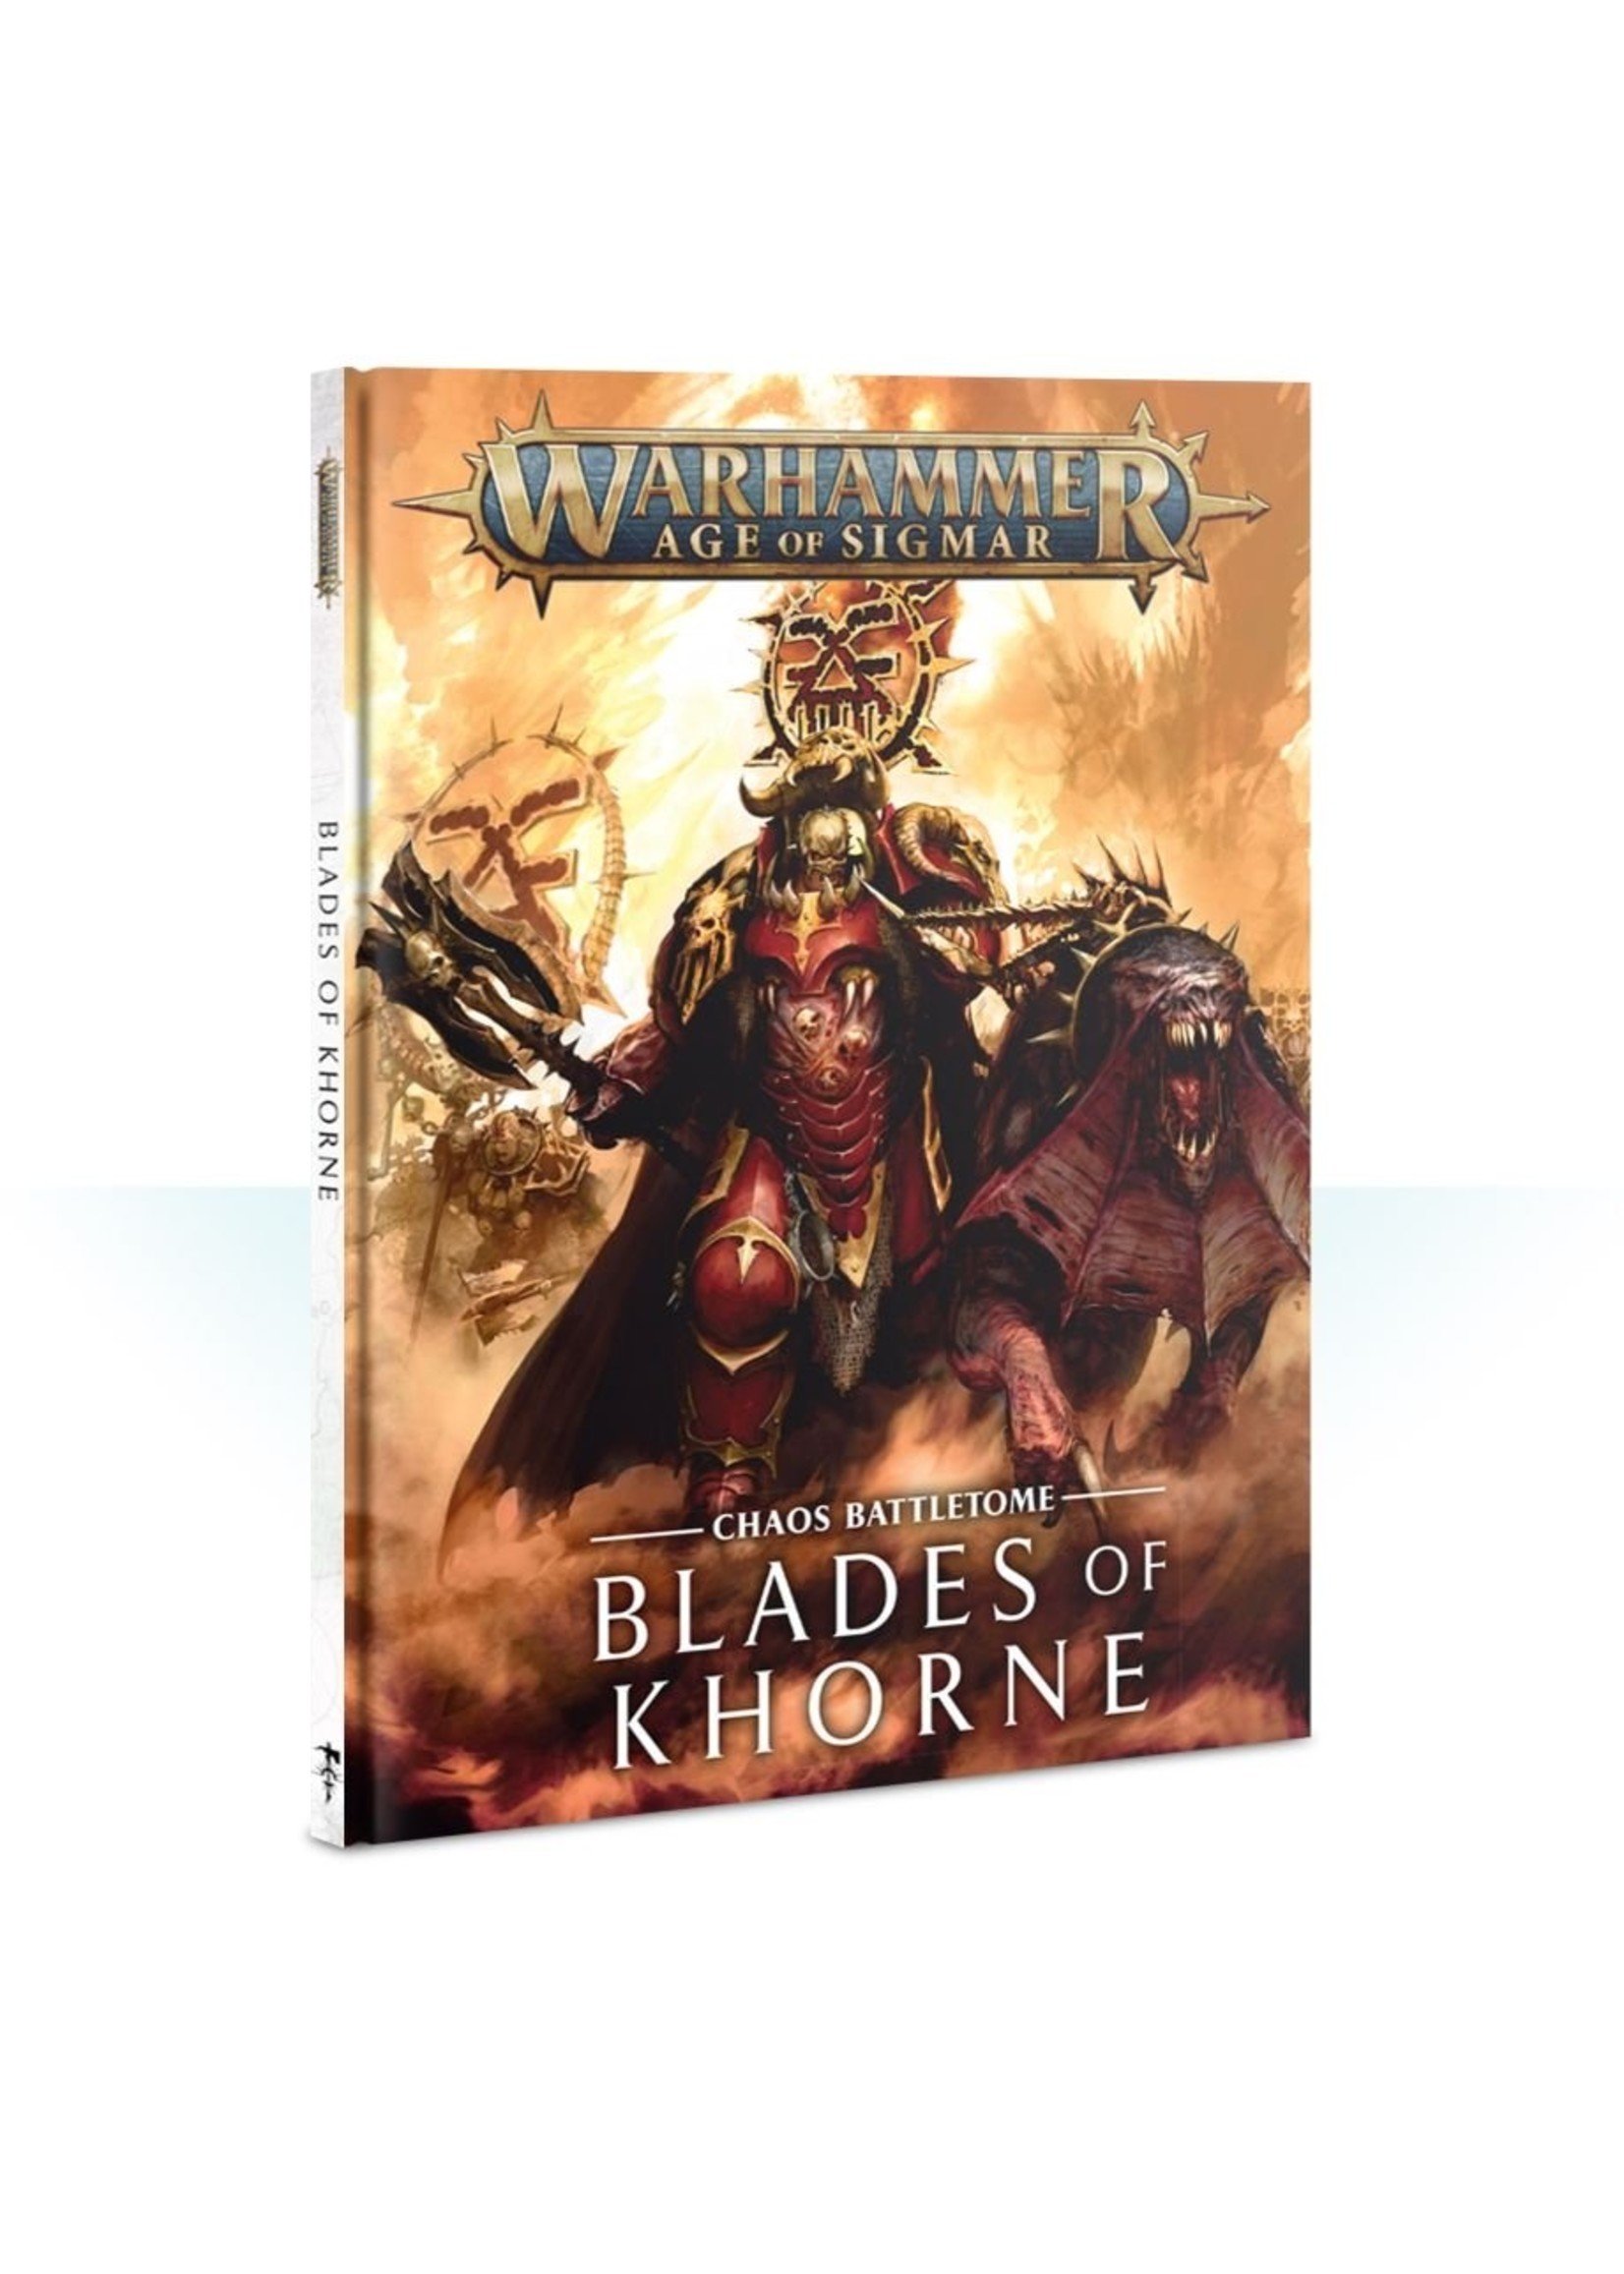 Warhammer Age of Sigmar: Blades of Khorne Battletome